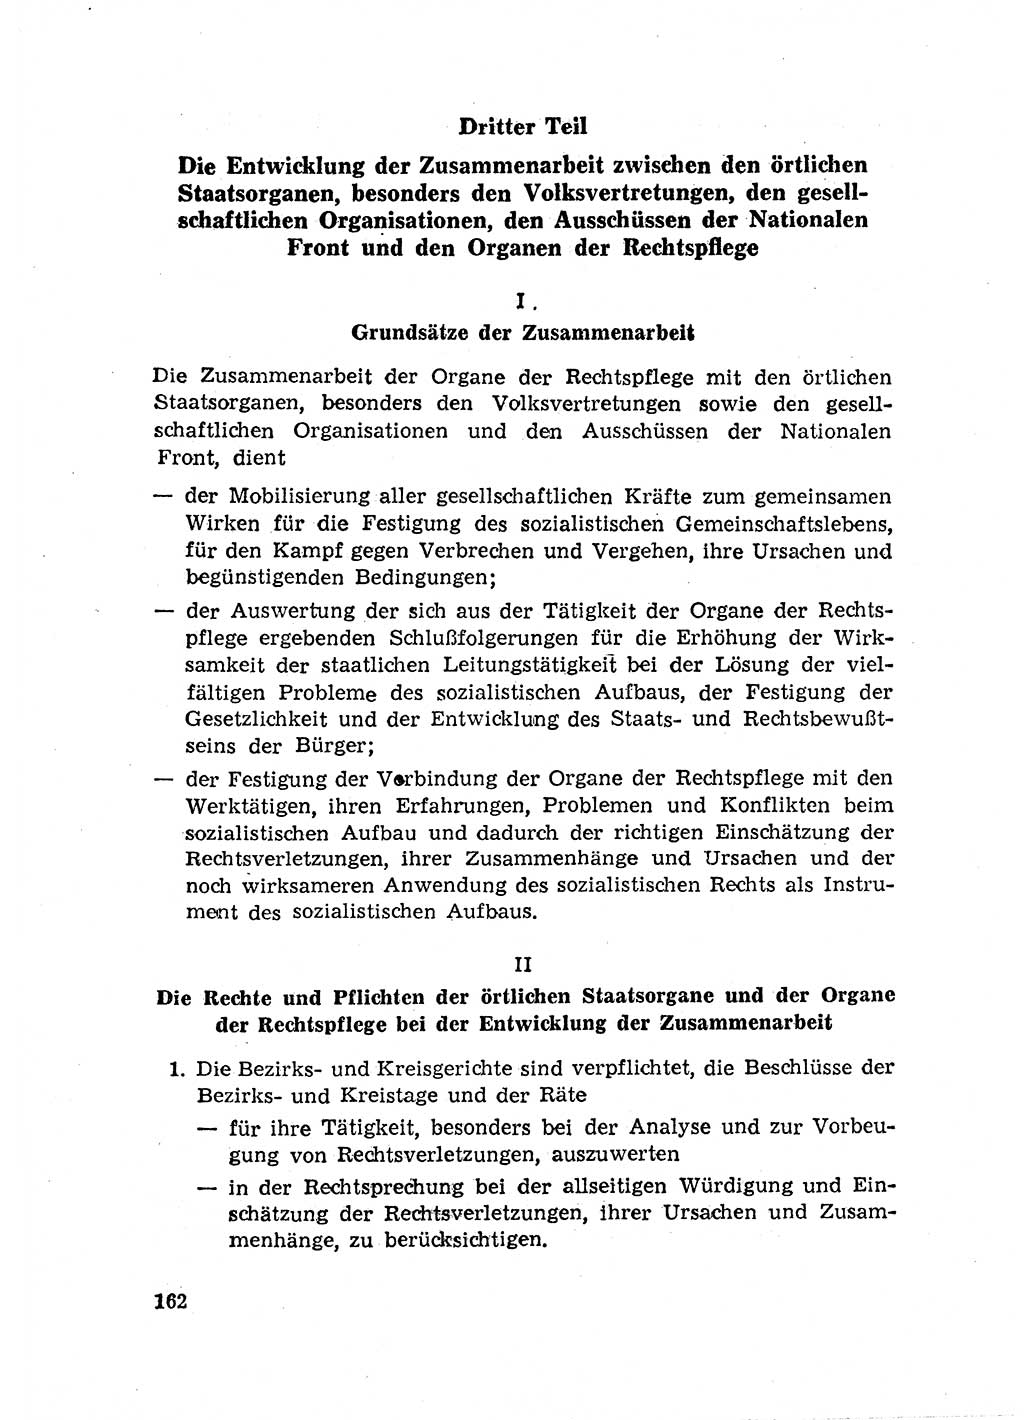 Rechtspflegeerlaß [Deutsche Demokratische Republik (DDR)] 1963, Seite 162 (R.-Pfl.-Erl. DDR 1963, S. 162)